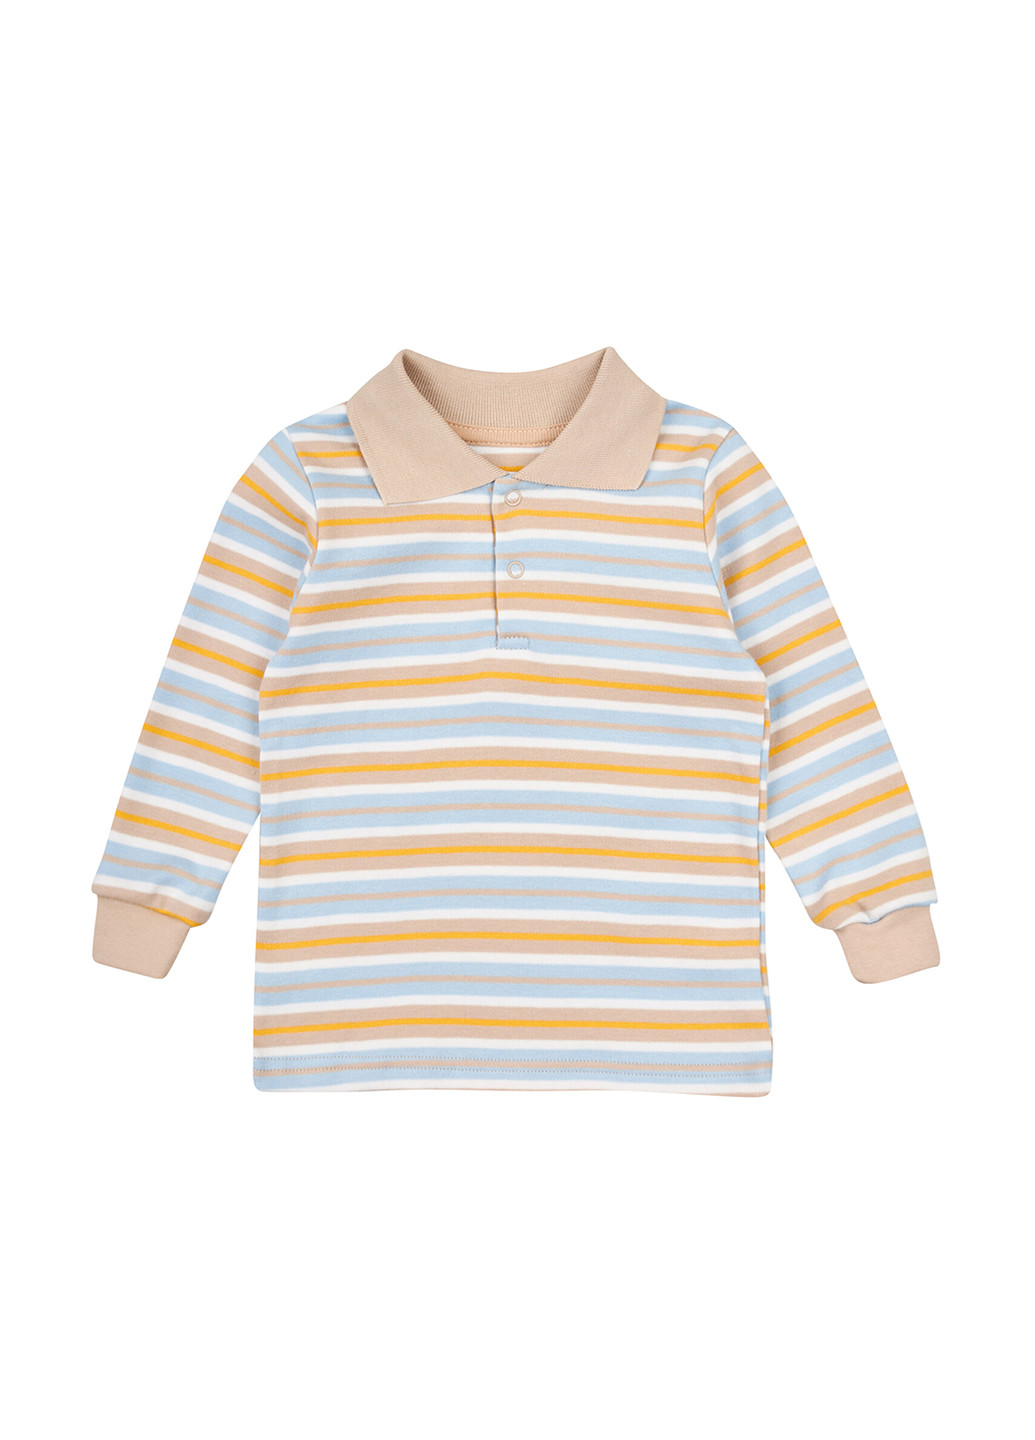 Цветная детская футболка-поло для мальчика Z16 в полоску